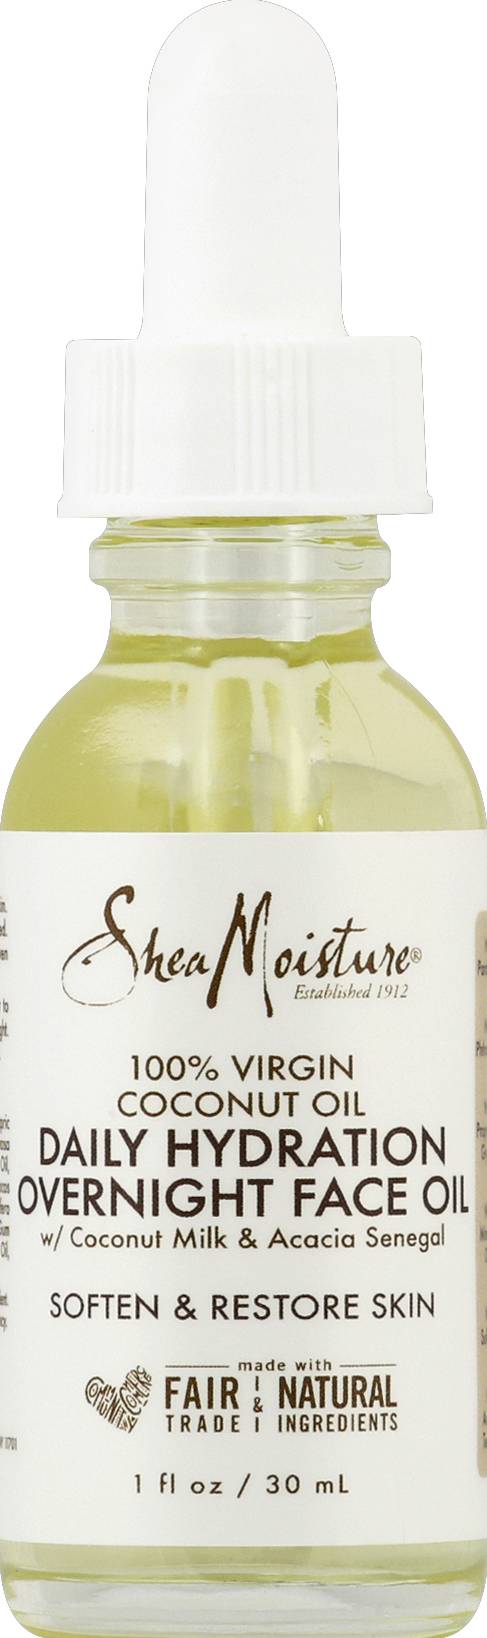 Shea Moisture Virgin Coconut Oil Daily Hydration Overnight Face Oil